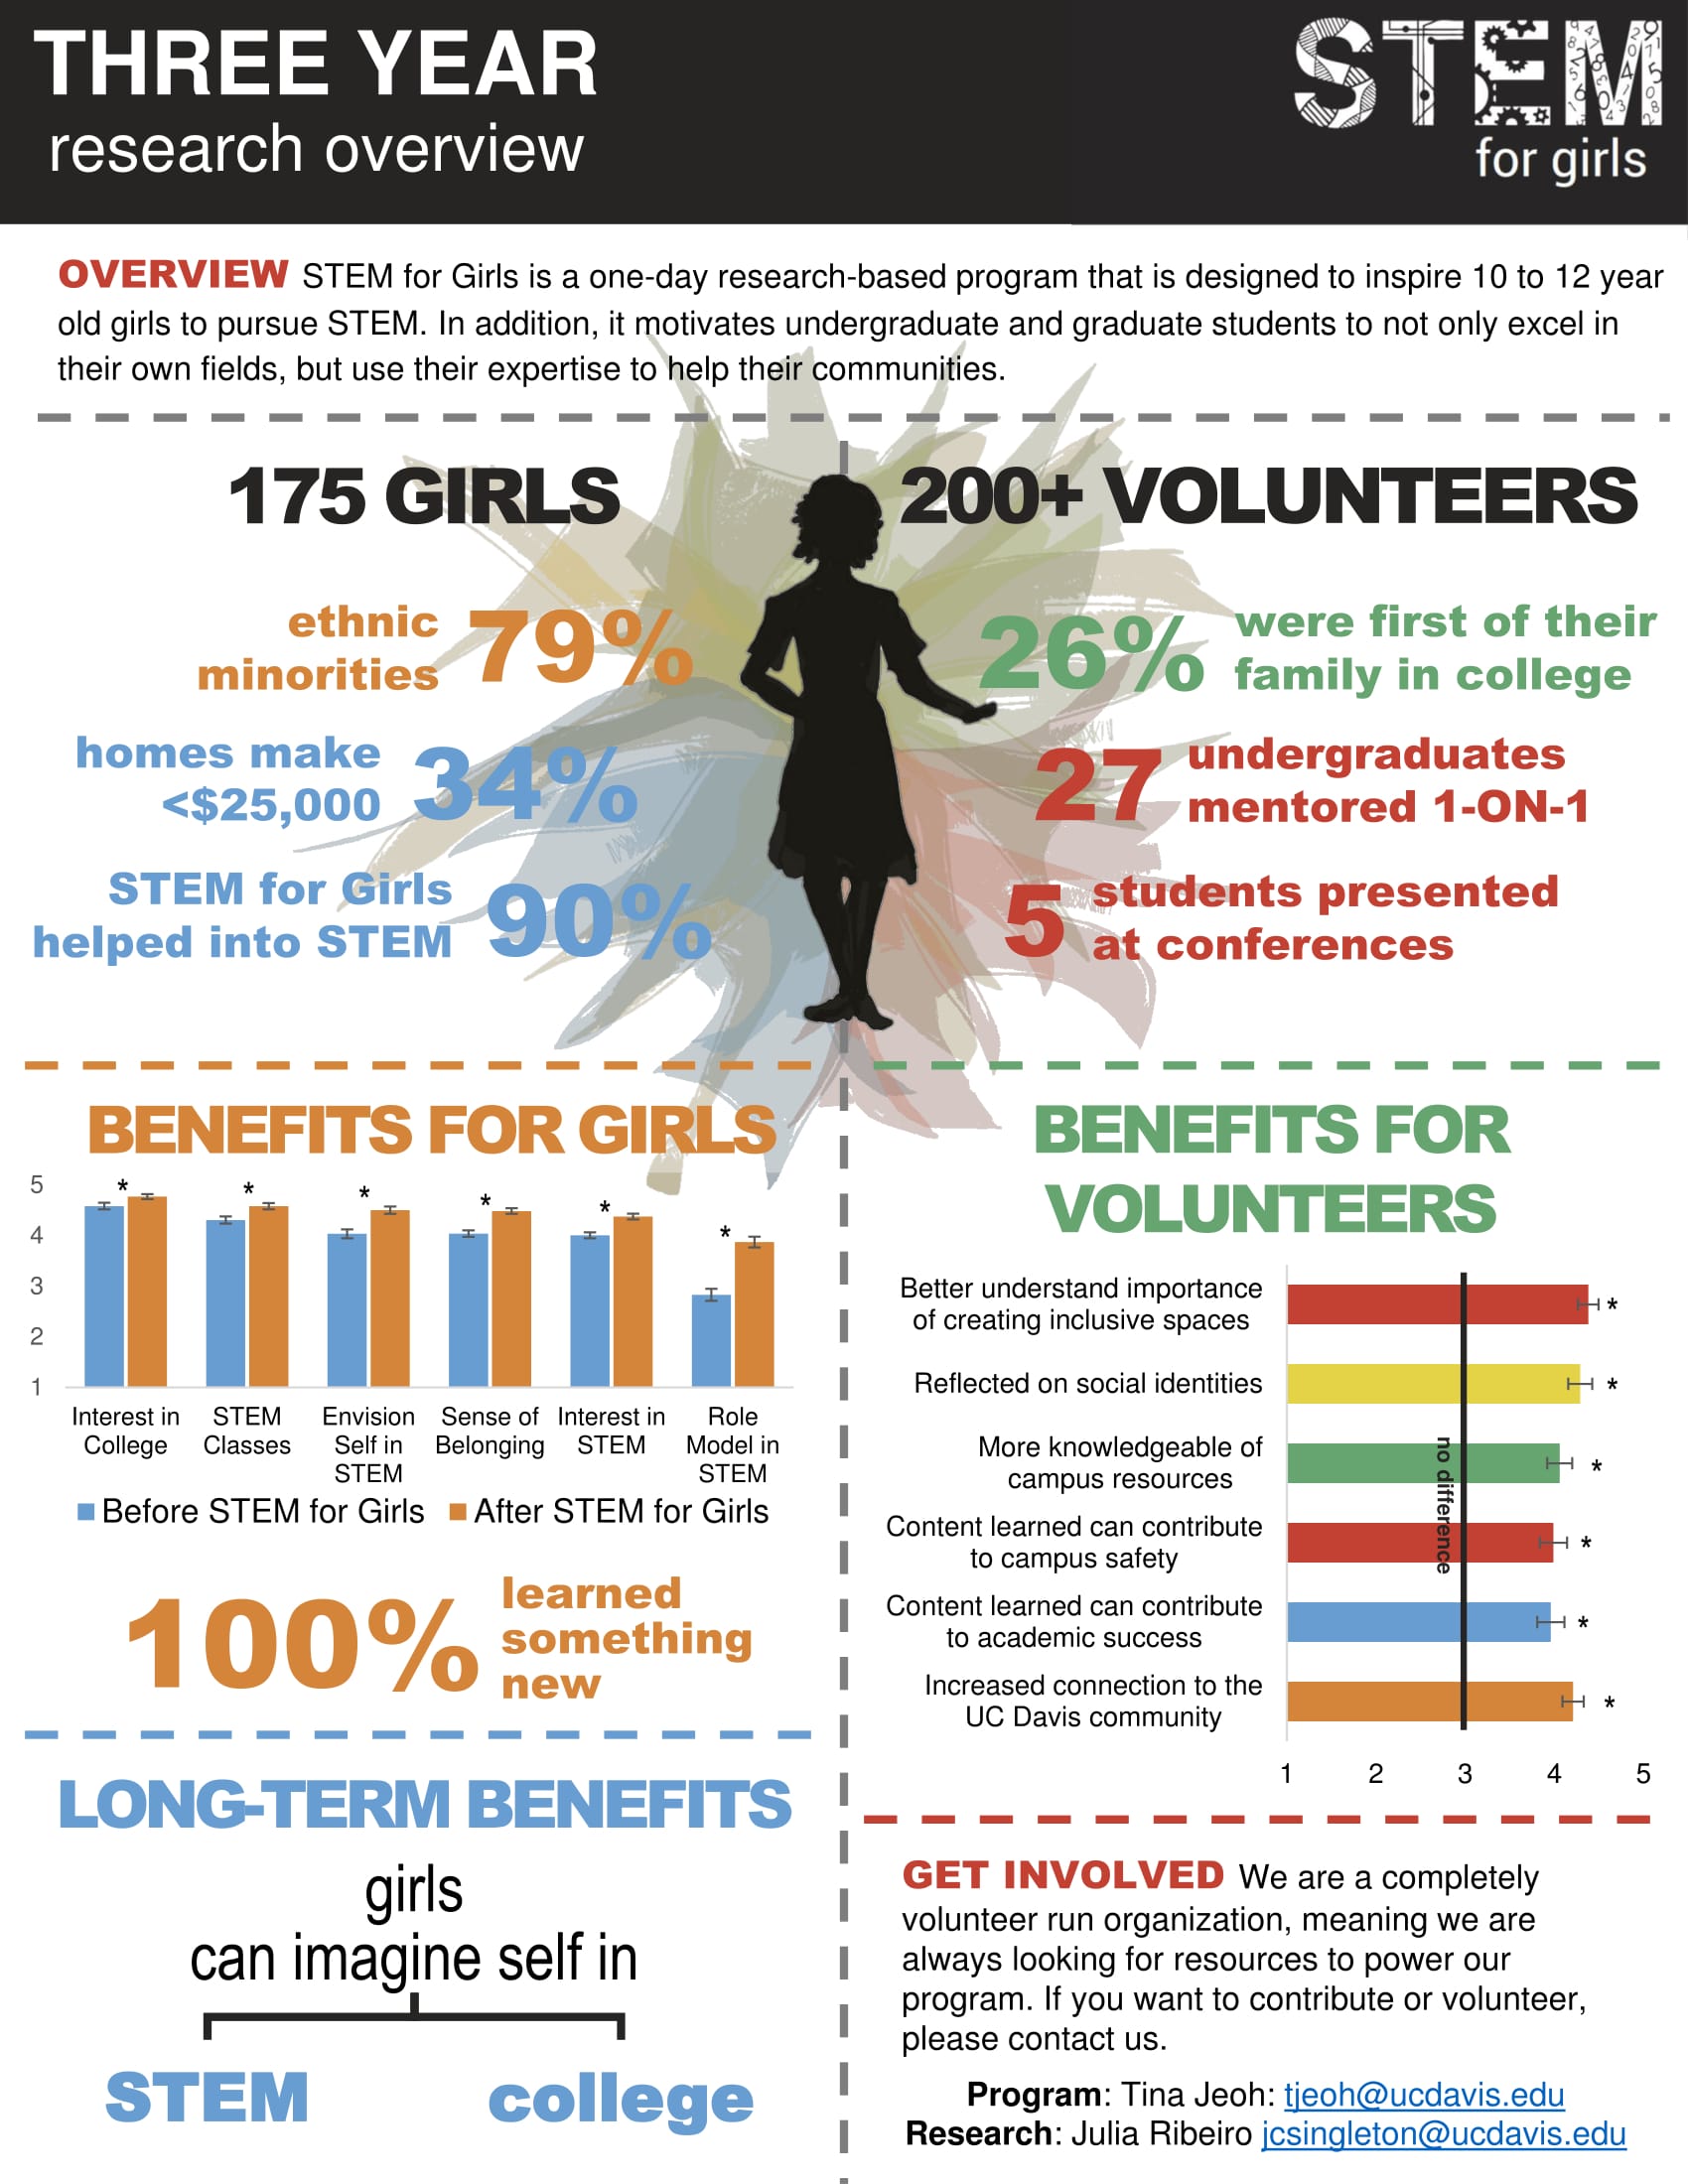 Impact of STEM for Girls program